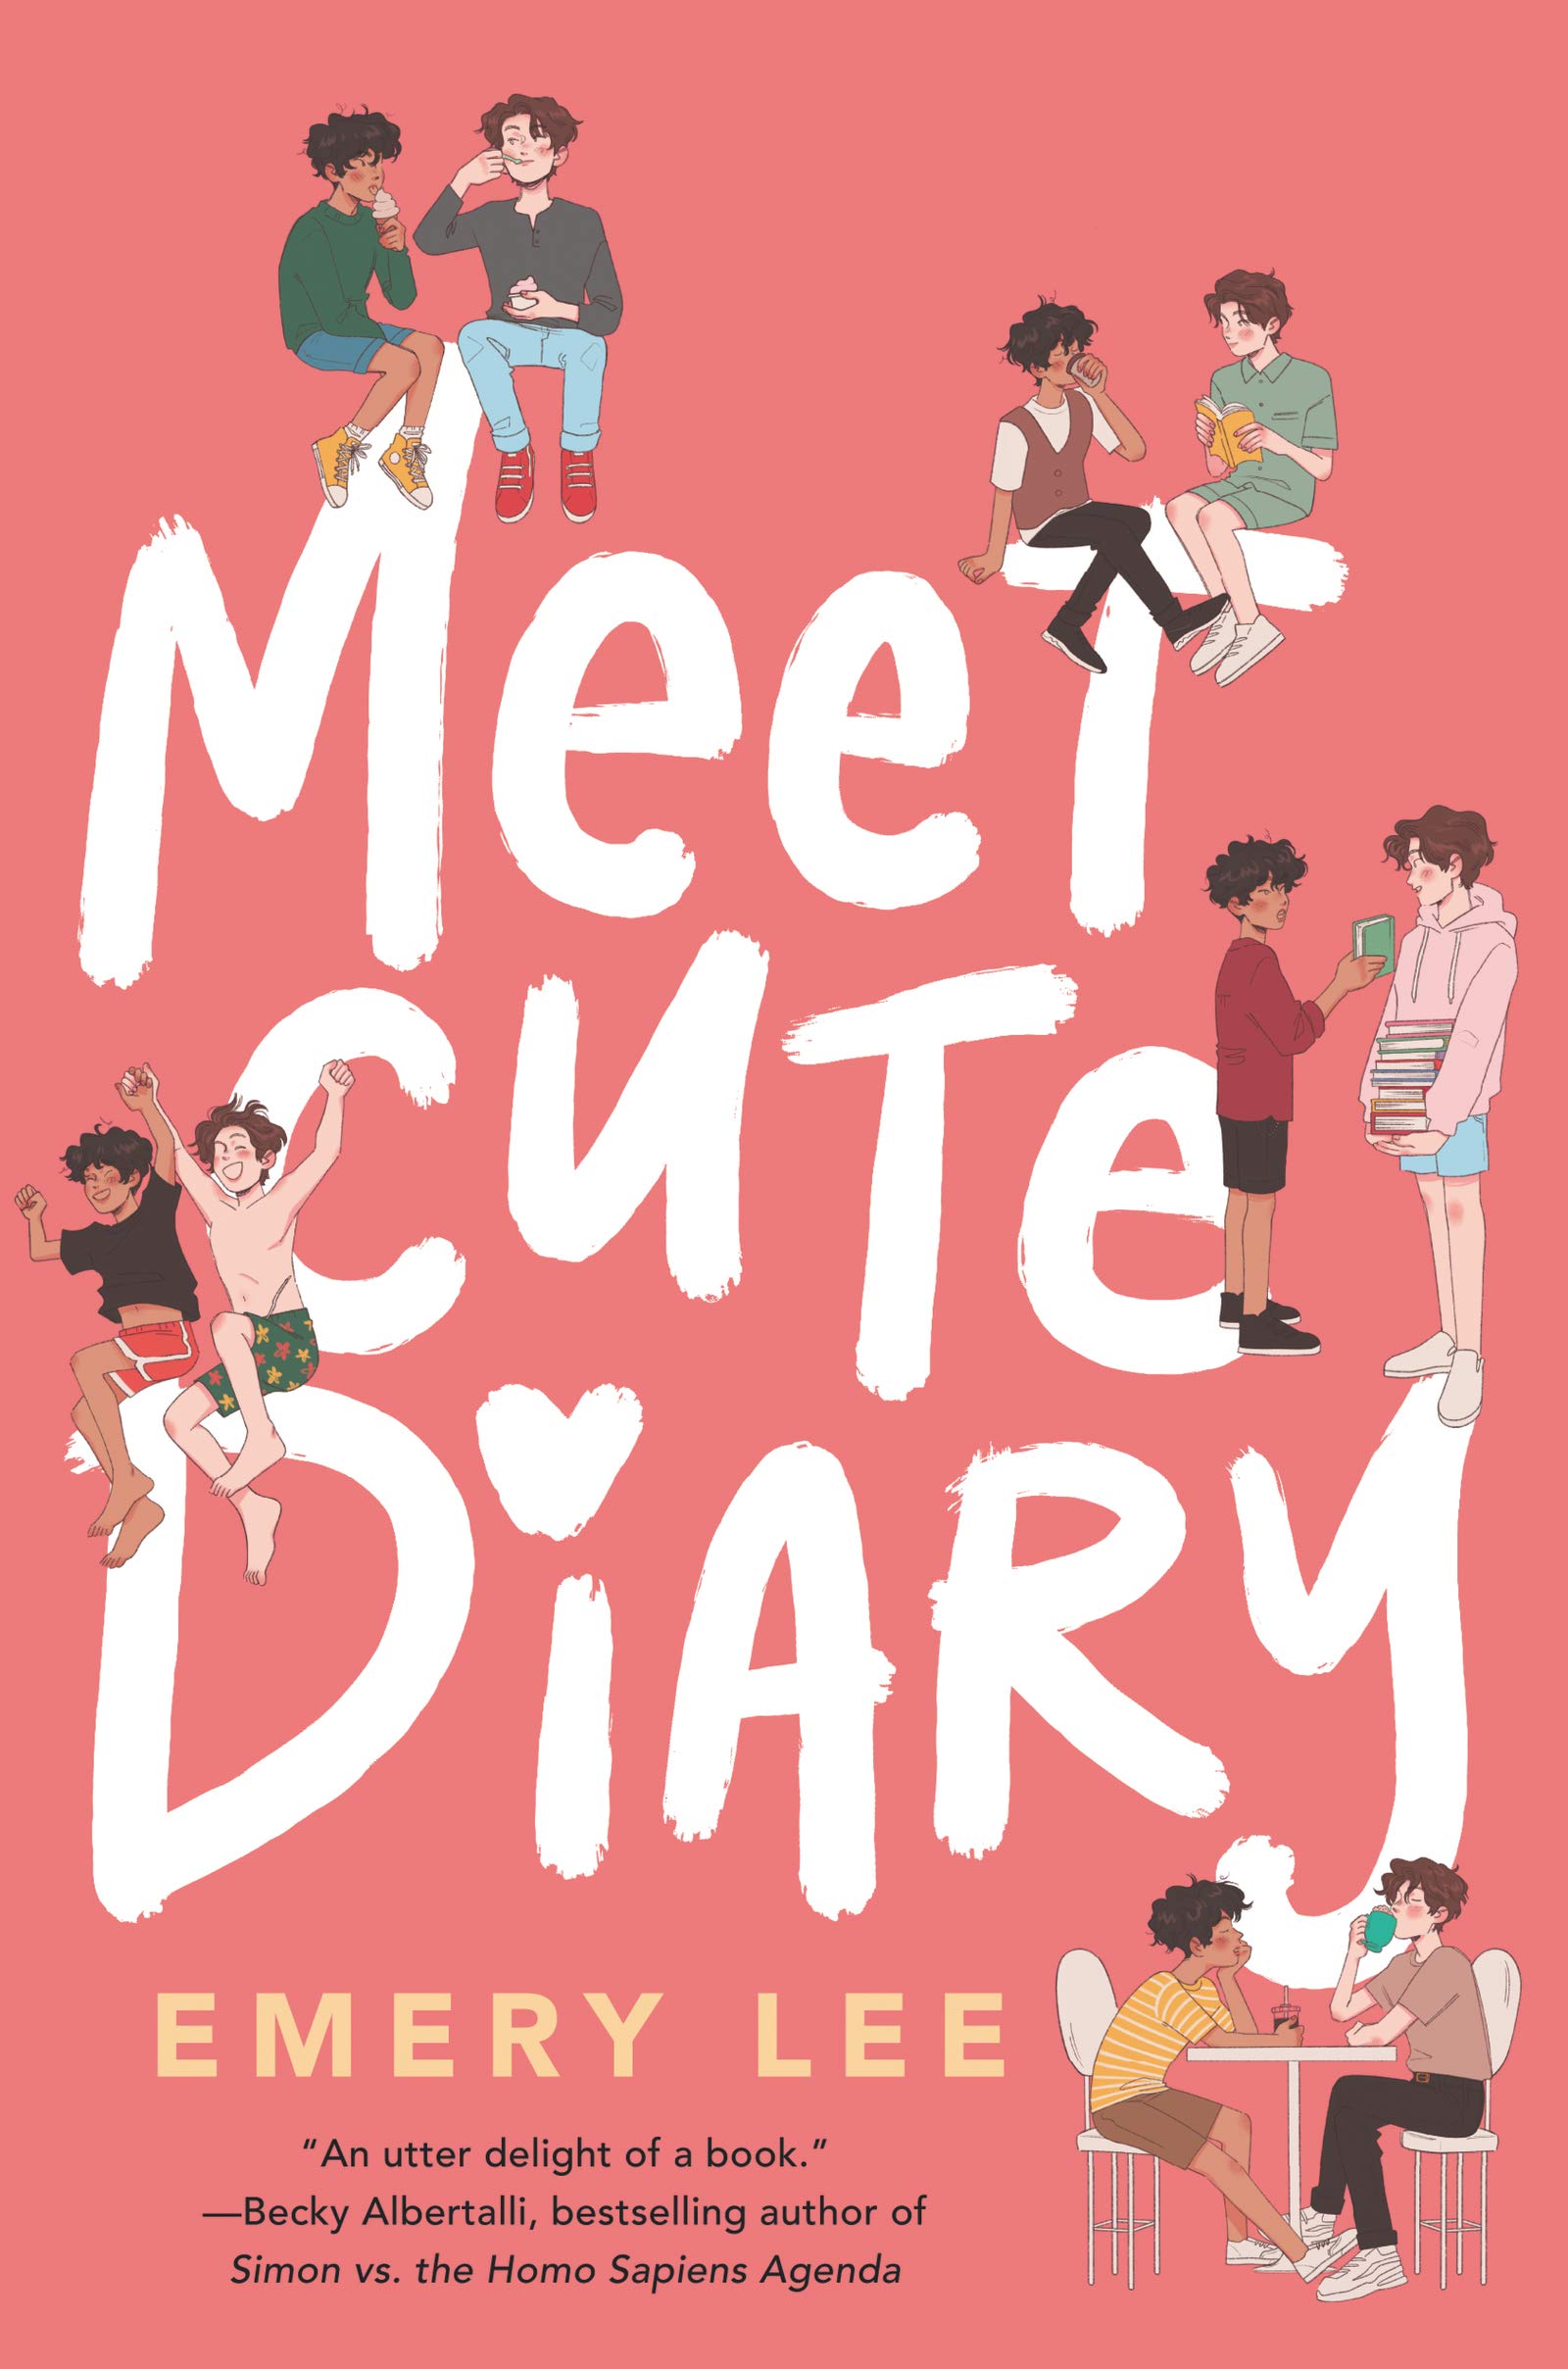 couverture de Meet Cute Diary de Emery Lee